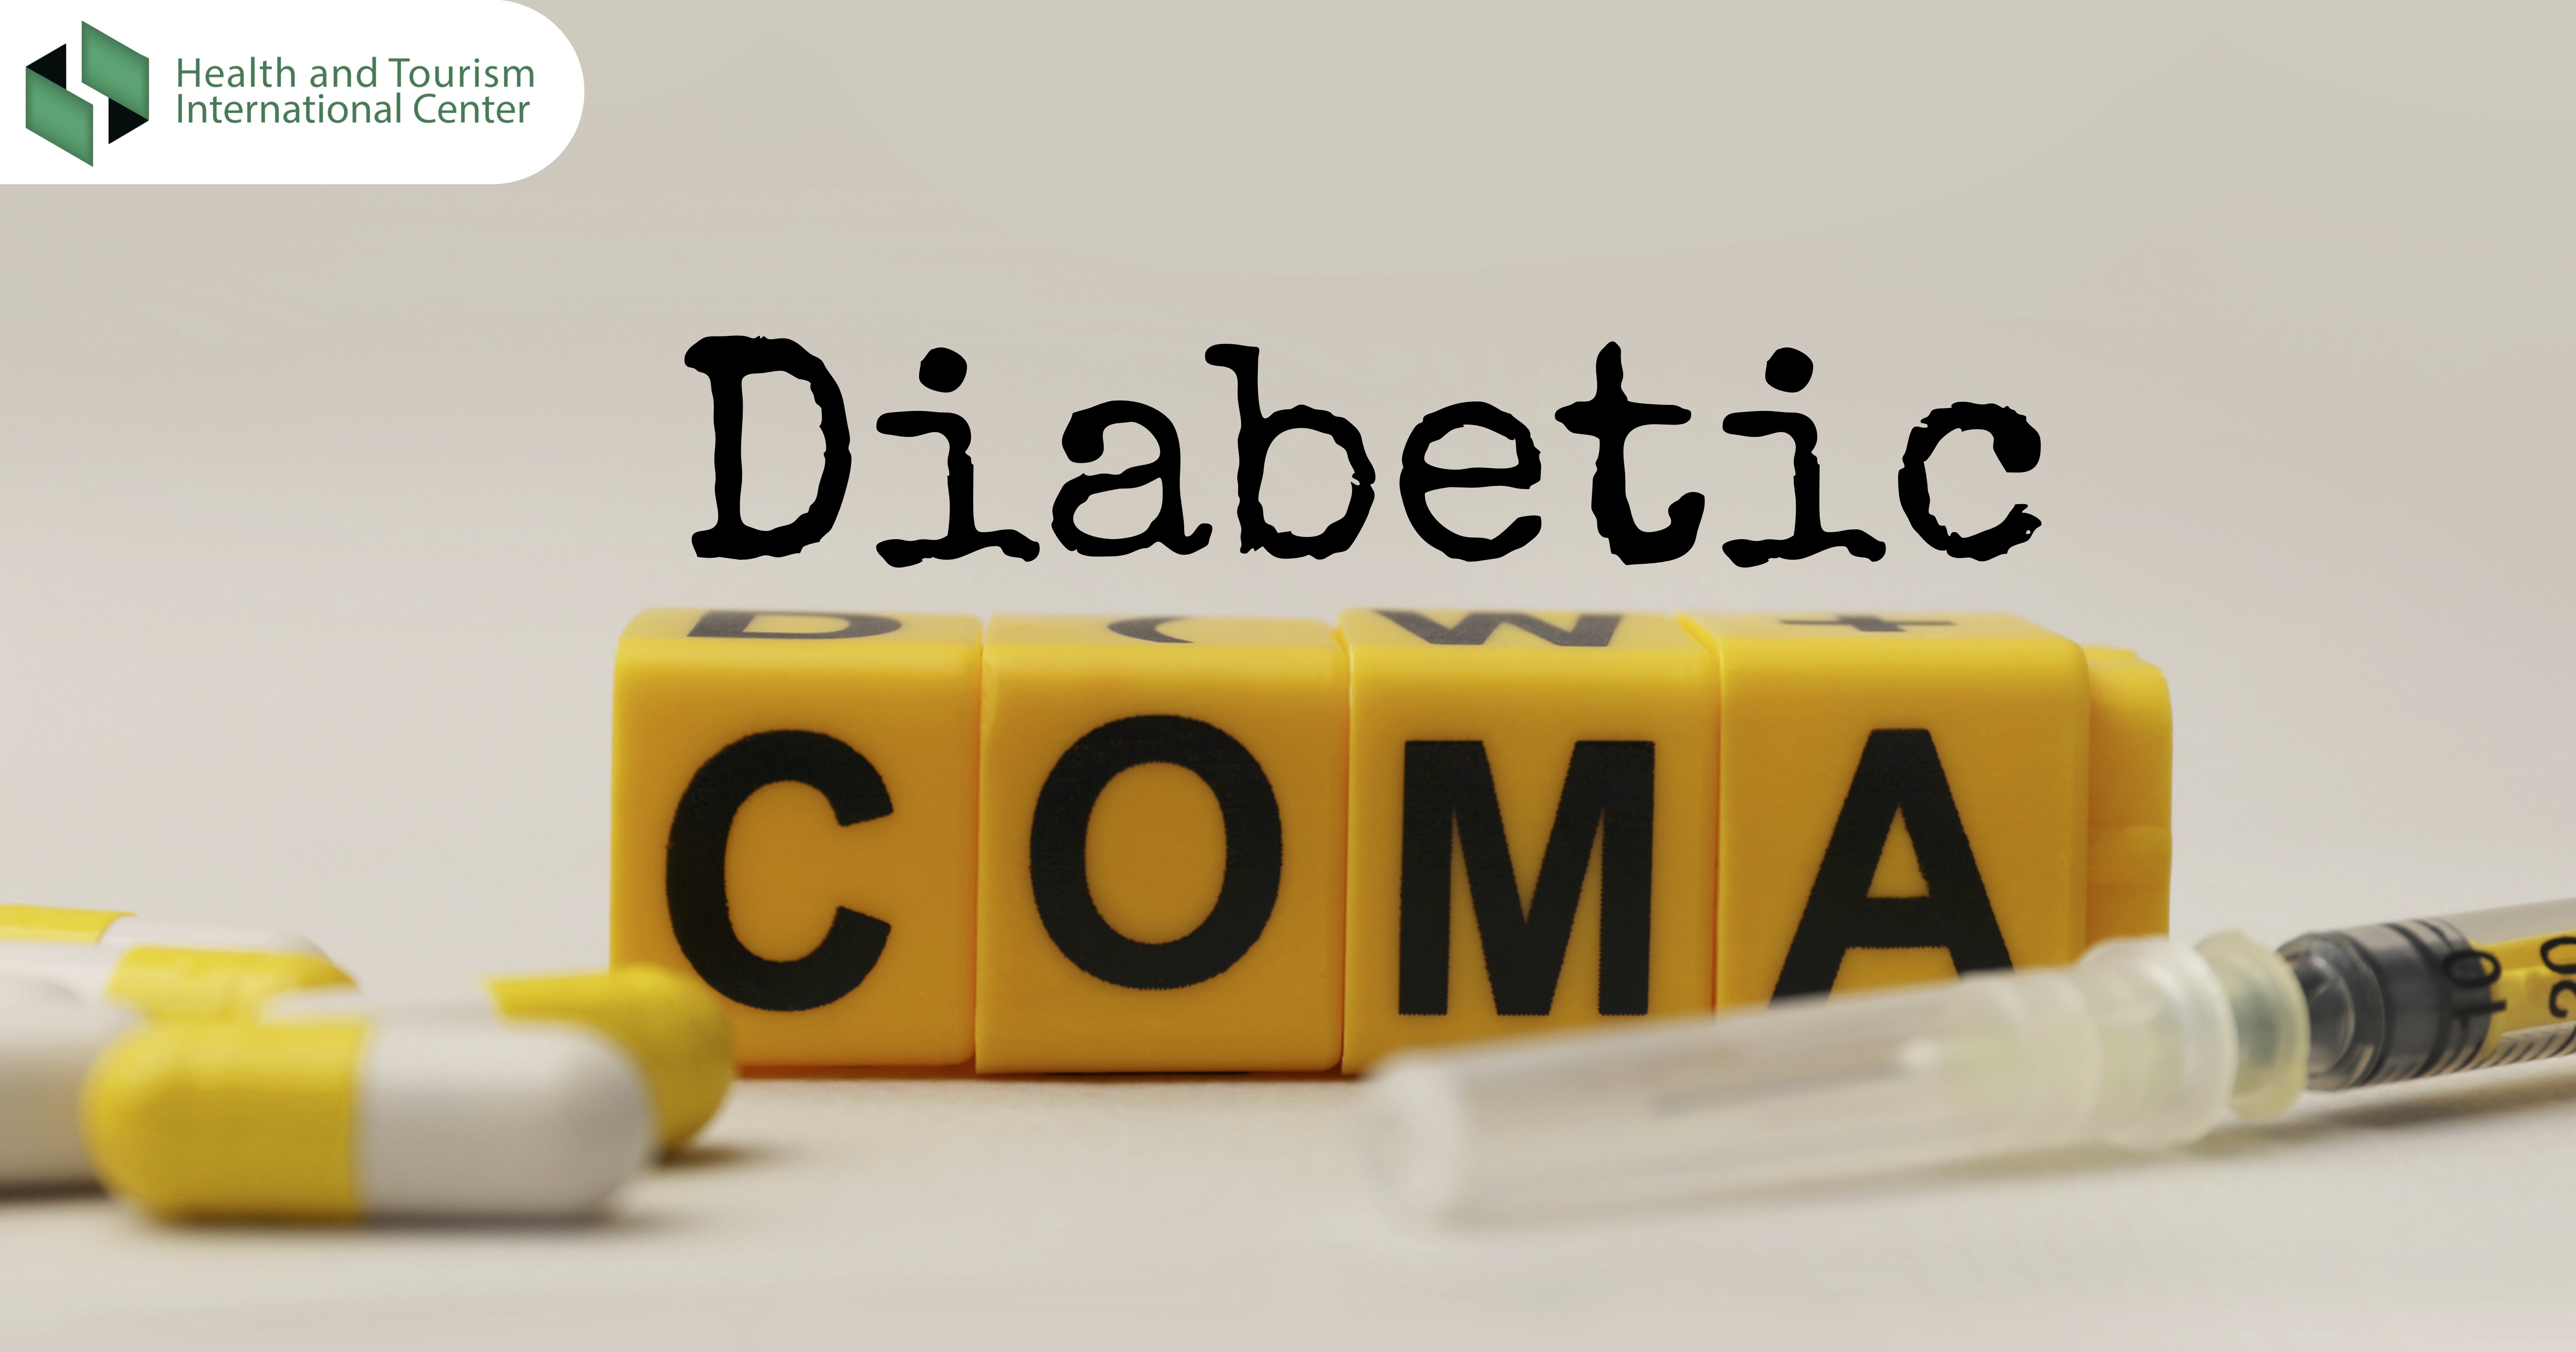 დიაბეტური კომა - დიაგნოსტირებისა და მკურნალობის მეთოდები